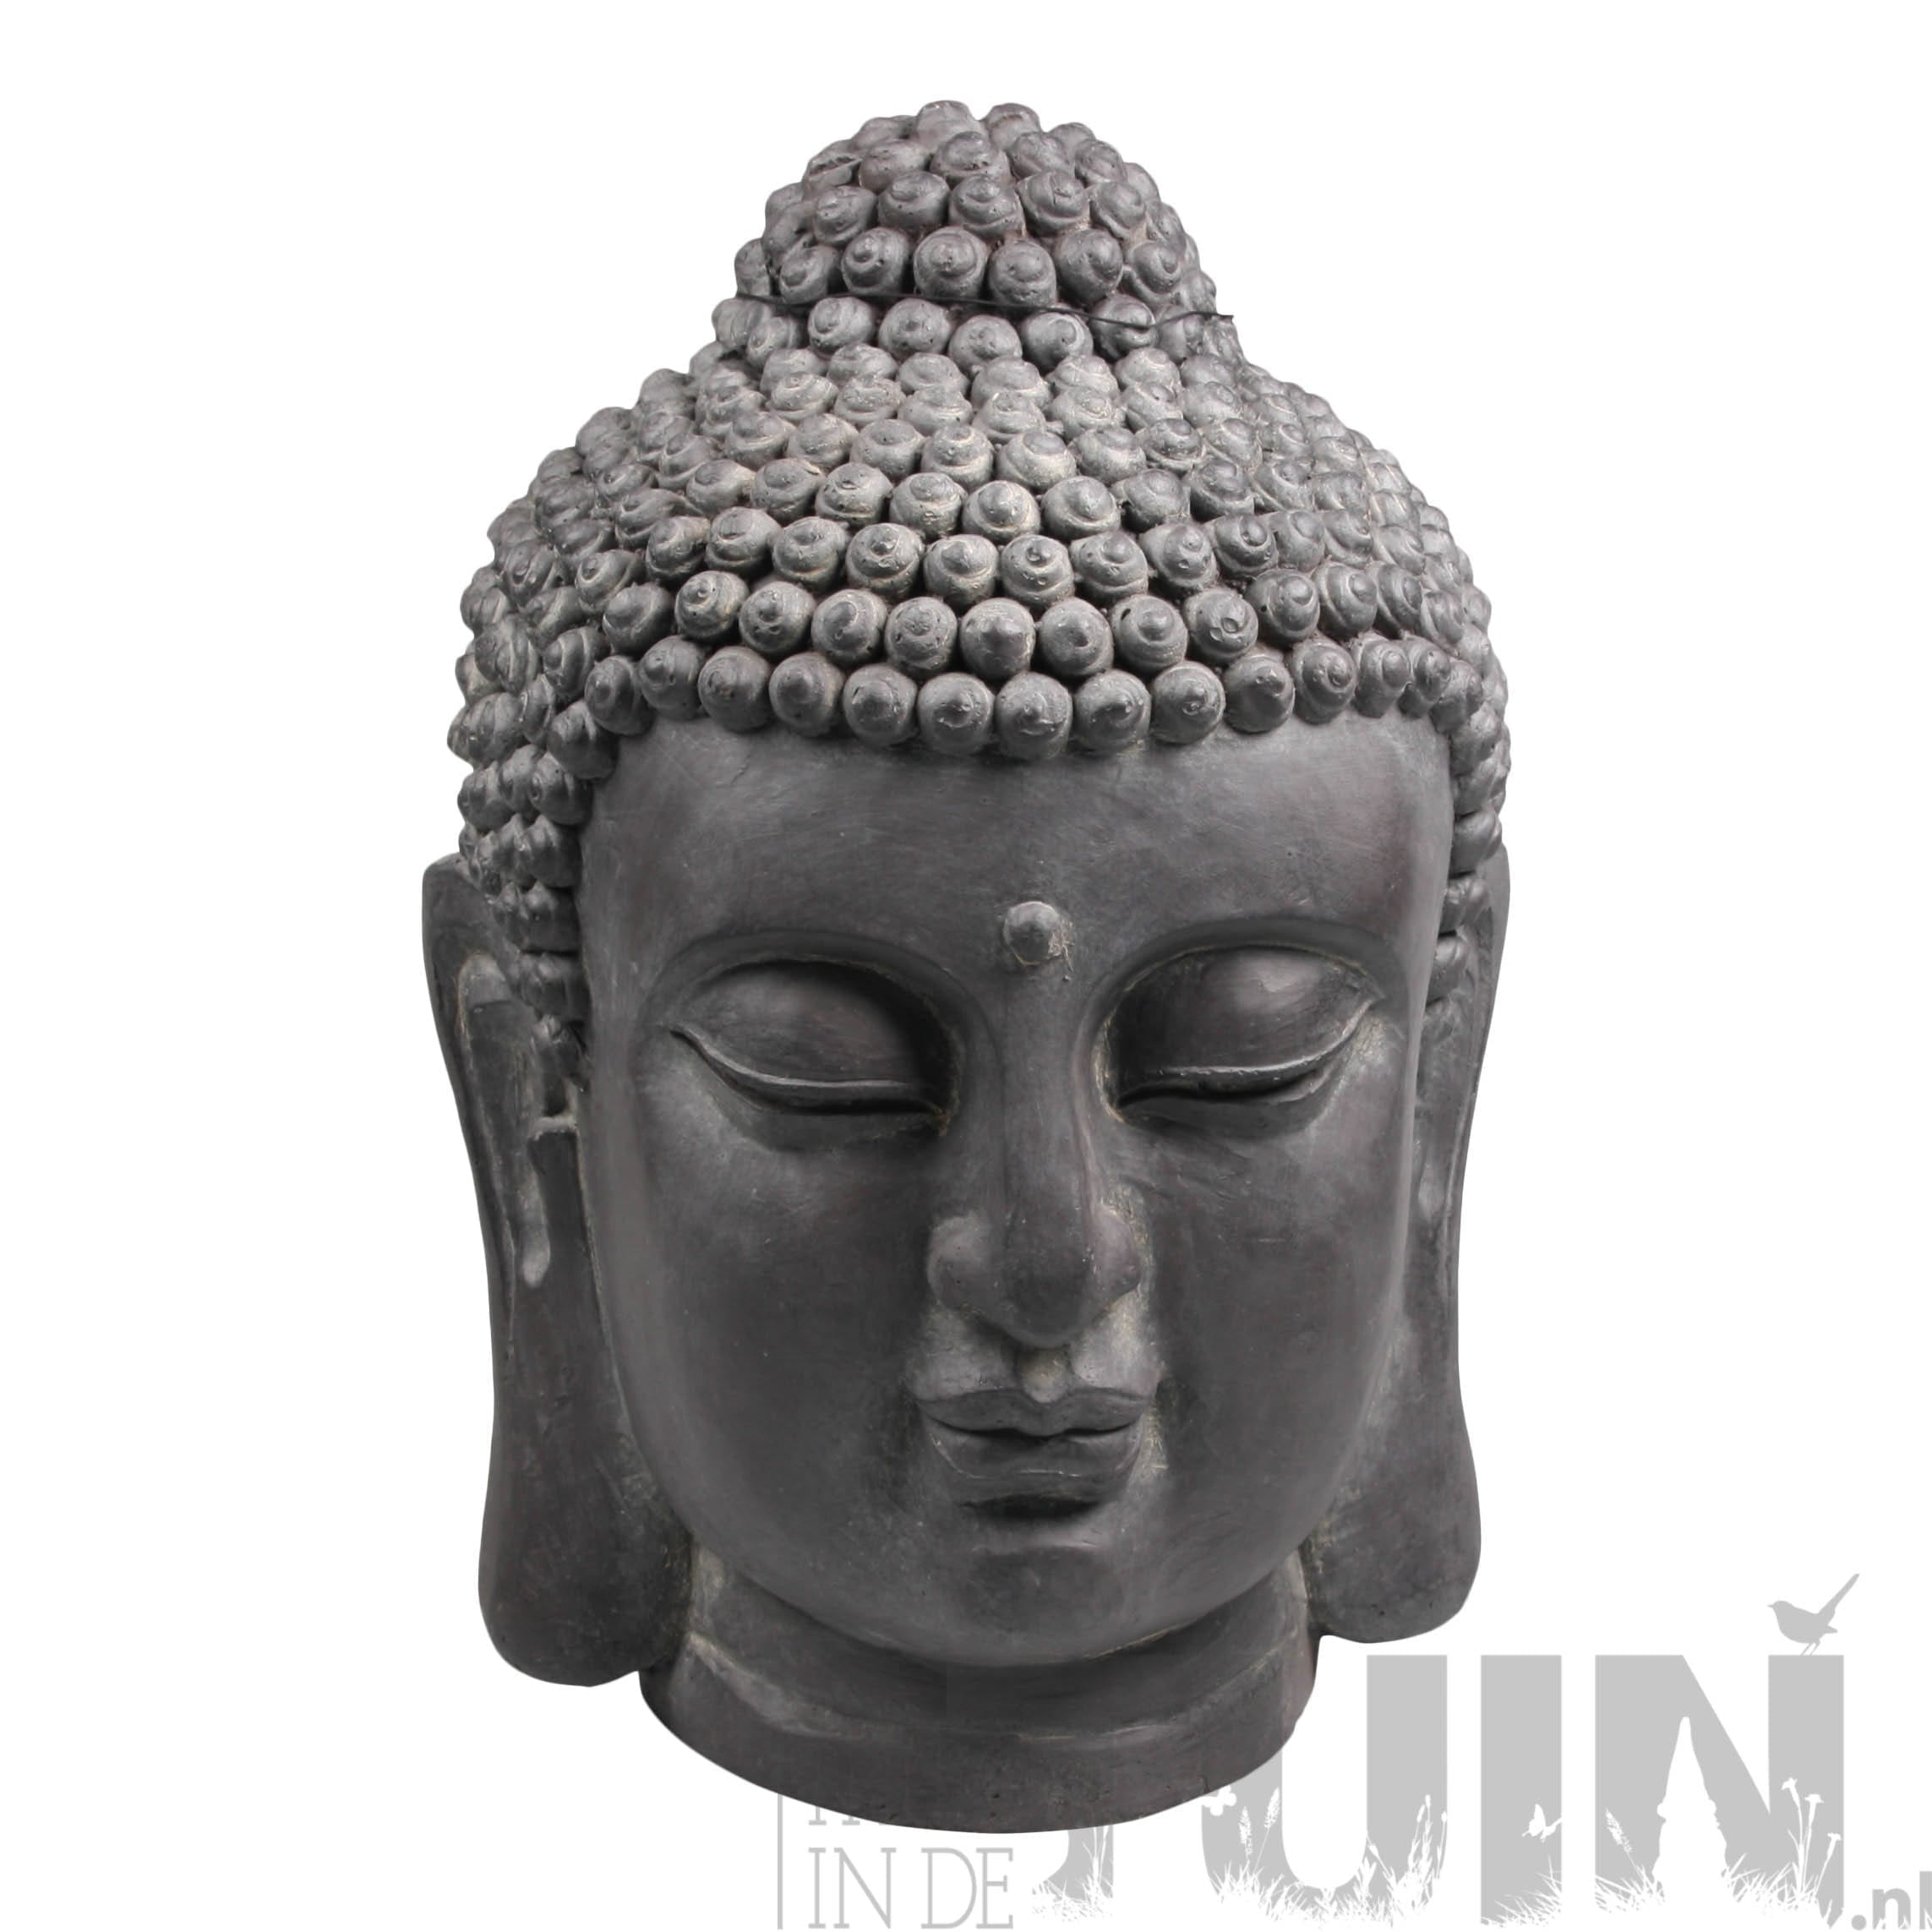 buddha beeld